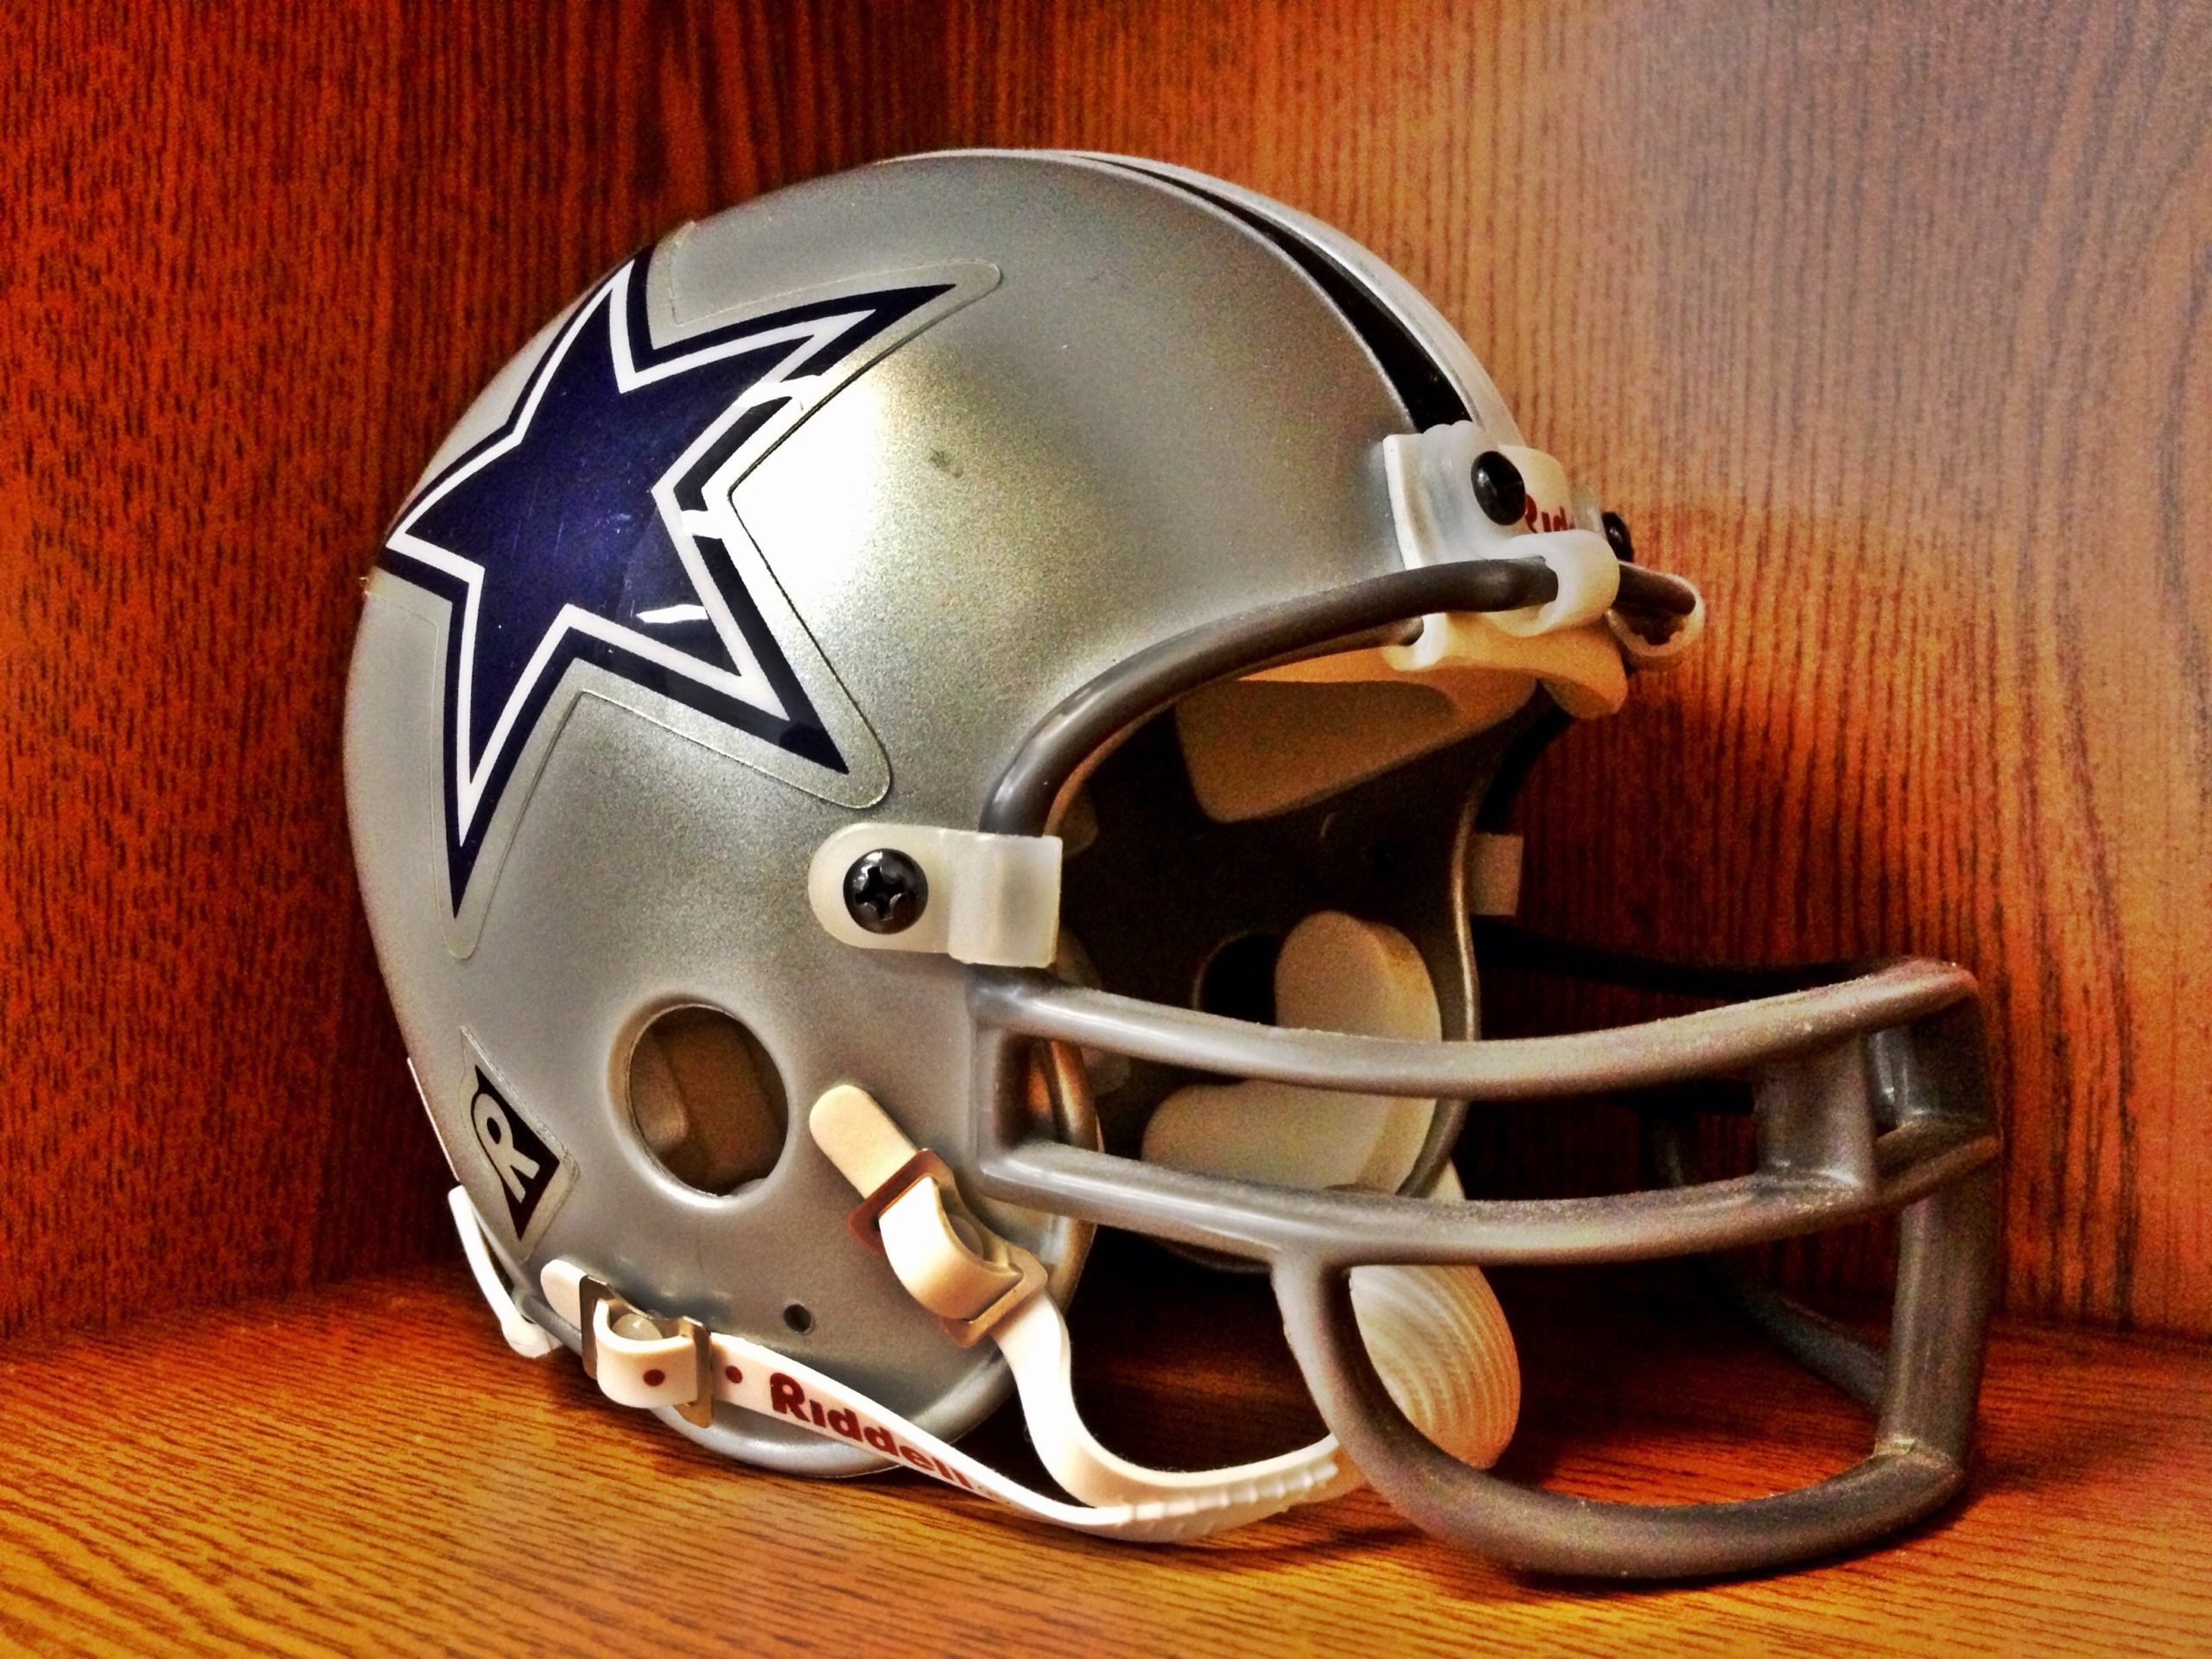 Dallas Cowboys vintage helmet. | Image by ray_explores on Flickr